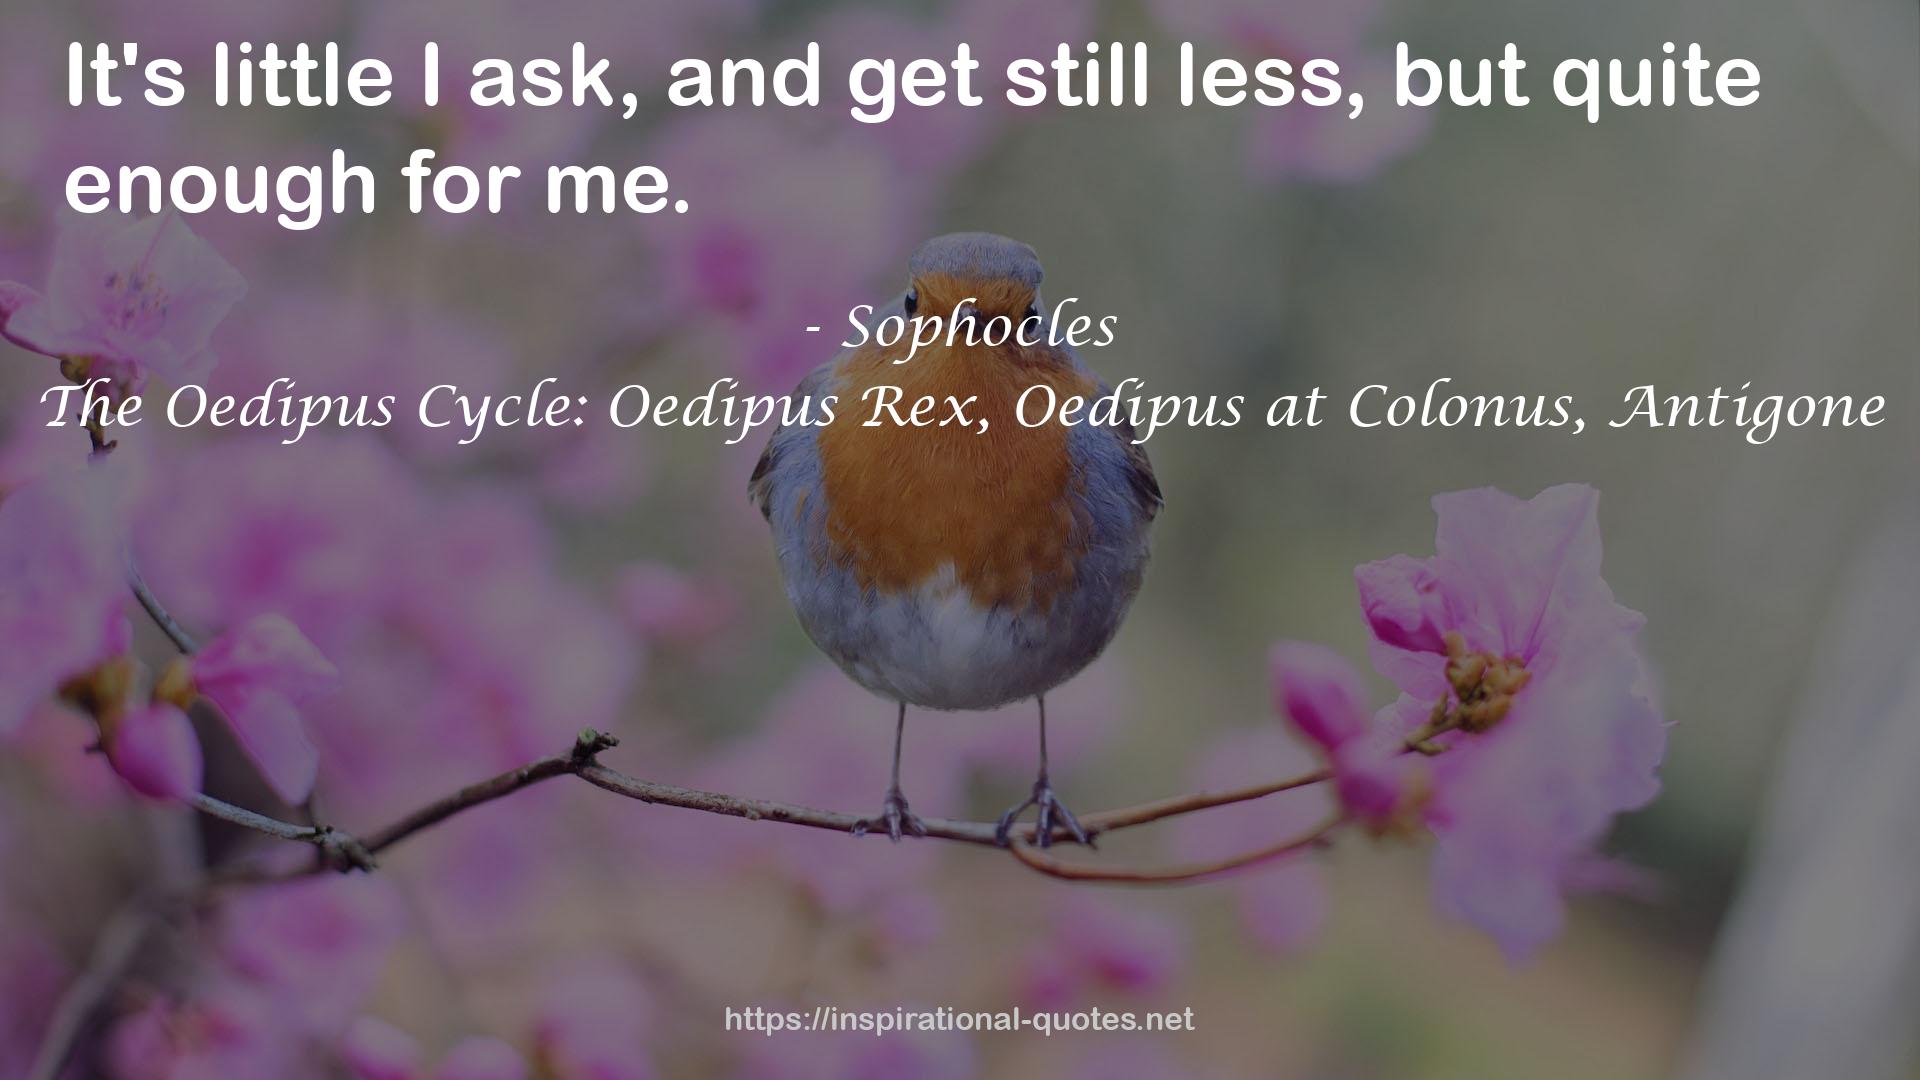 The Oedipus Cycle: Oedipus Rex, Oedipus at Colonus, Antigone QUOTES